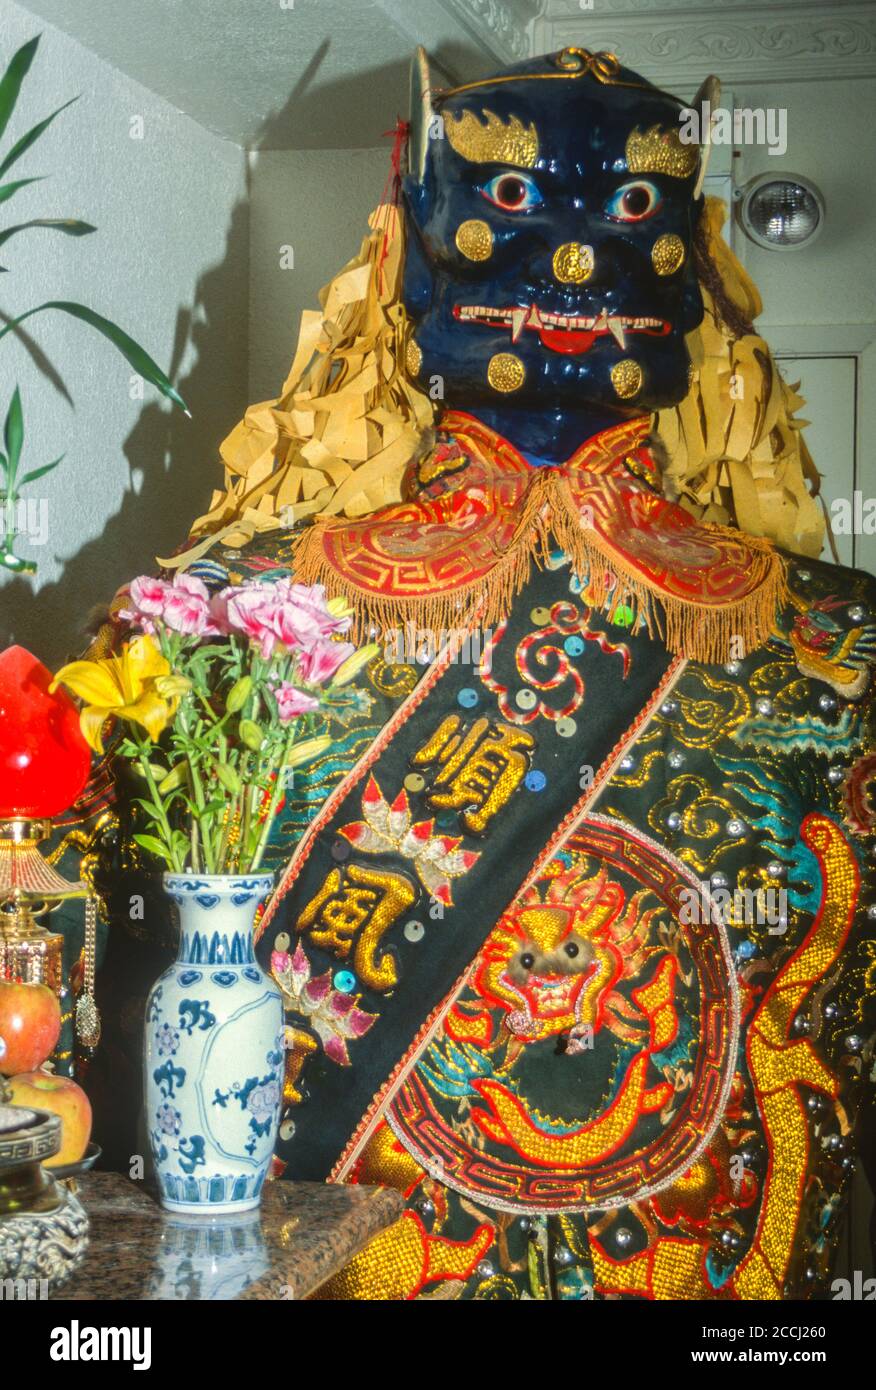 MA Tsu Tempel, ein taoistischer Tempel, Chinatown, San Francisco, Kalifornien, USA. Statue, die mythische Gottheit darstellt. Stockfoto